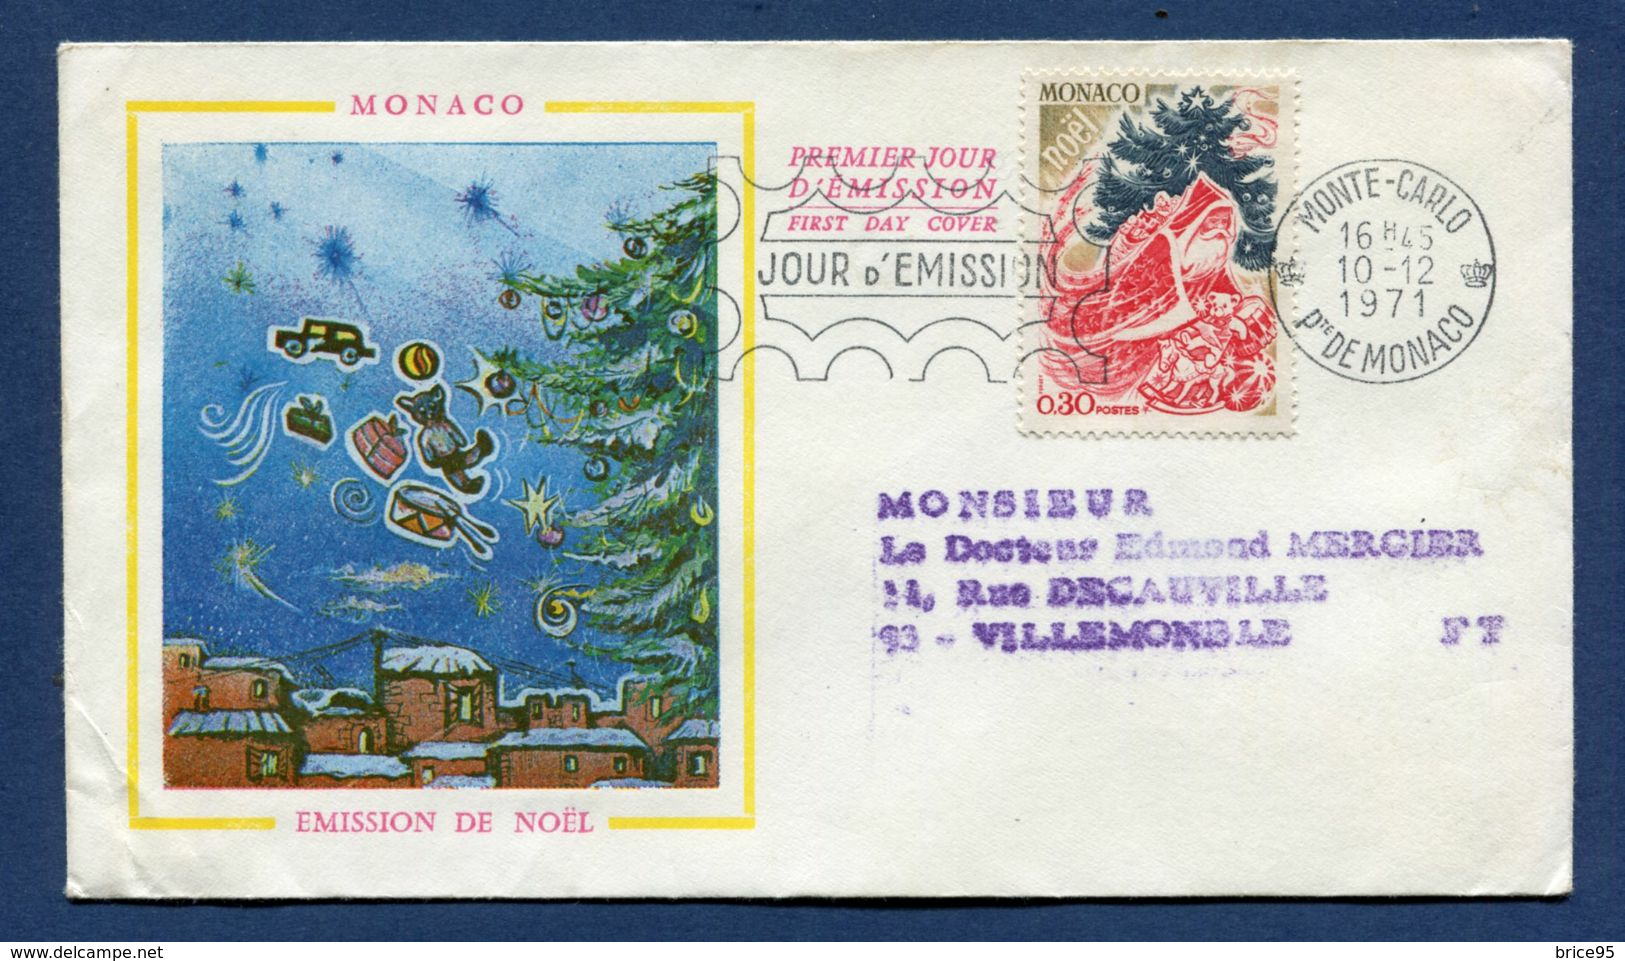 Monaco - Premier Jour - FDC - Emission De Noël - 1971 - FDC